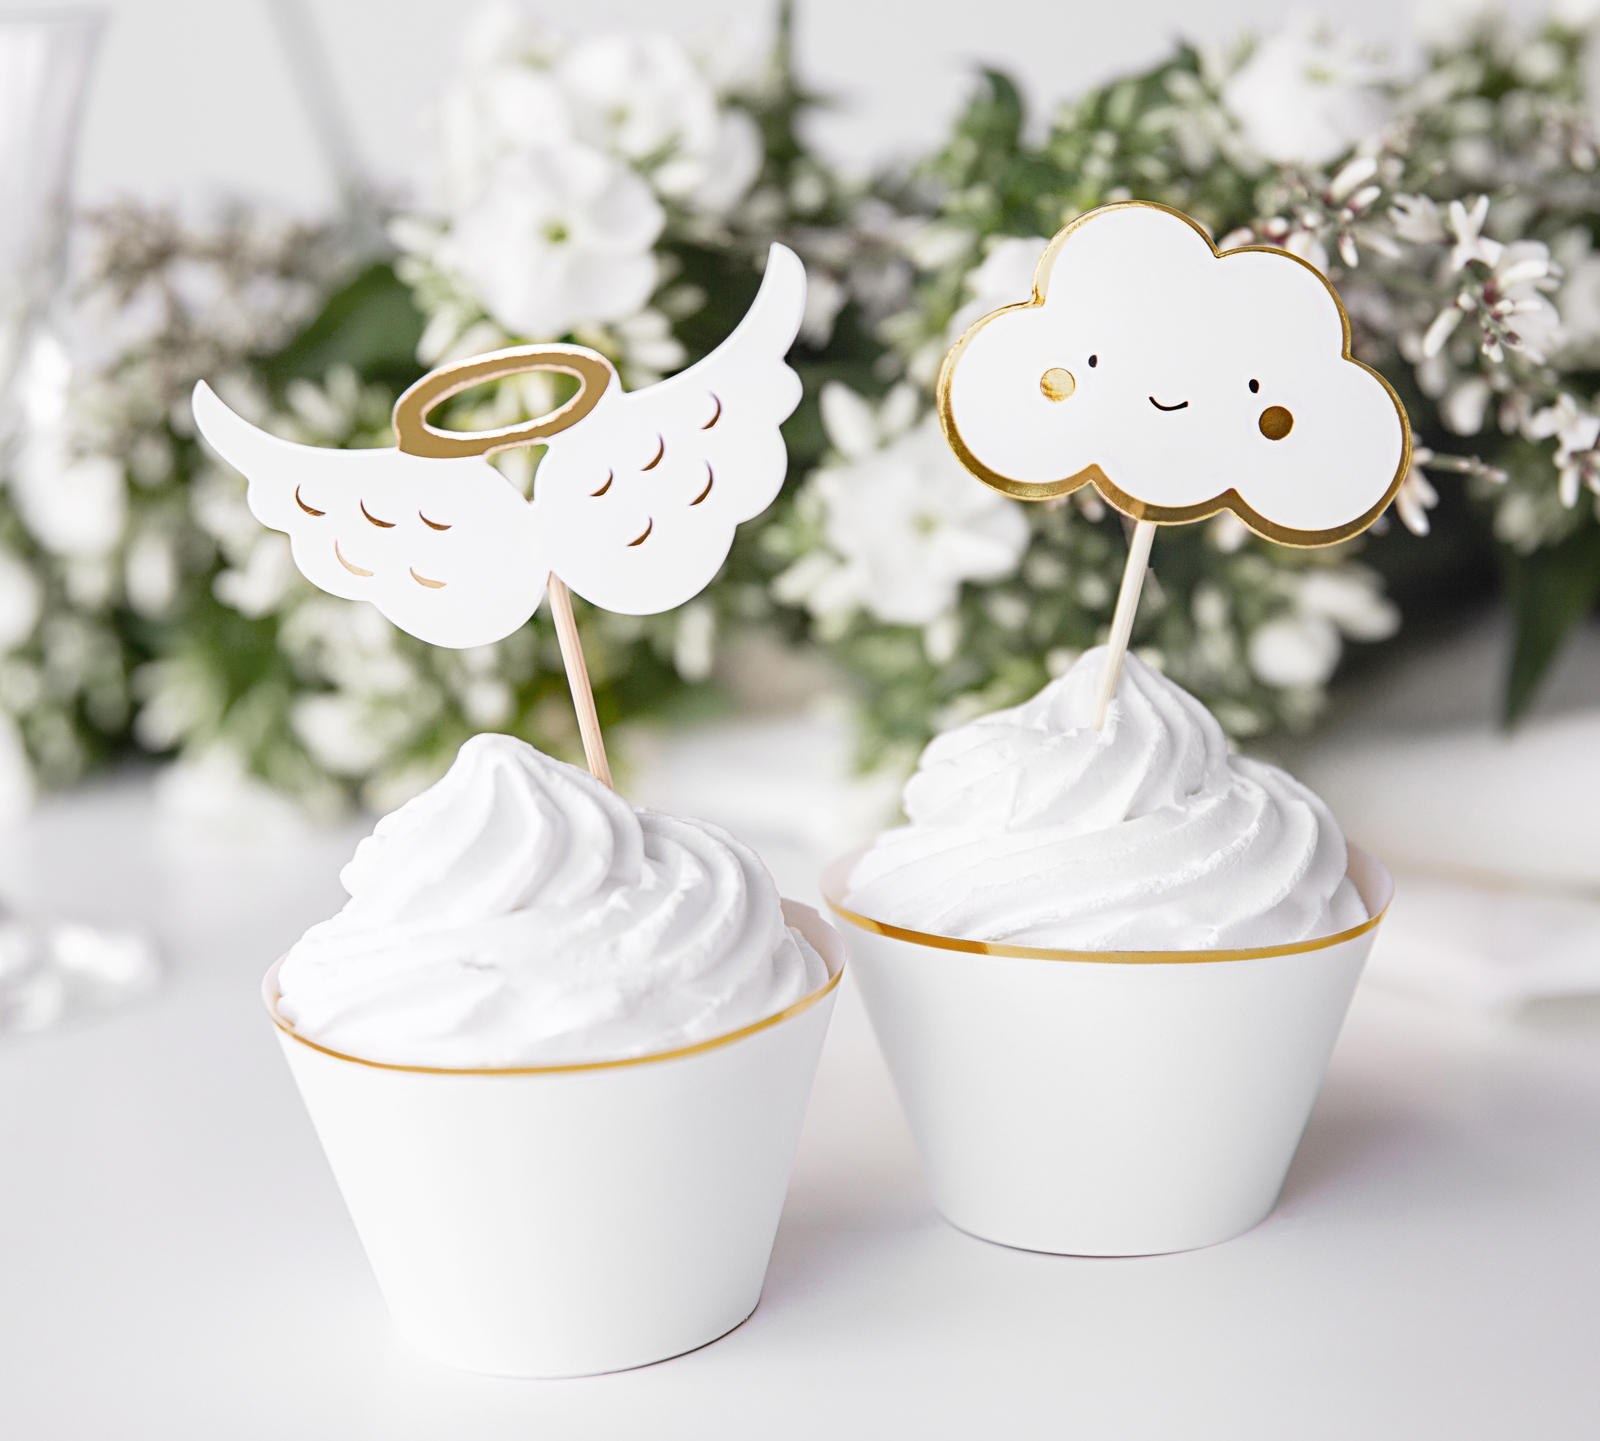 Set Di Buon Compleanno In Argento Lming Toppers Decorati A Mano Con 6 Glitter Per Decorare Cupcake E Gelato 